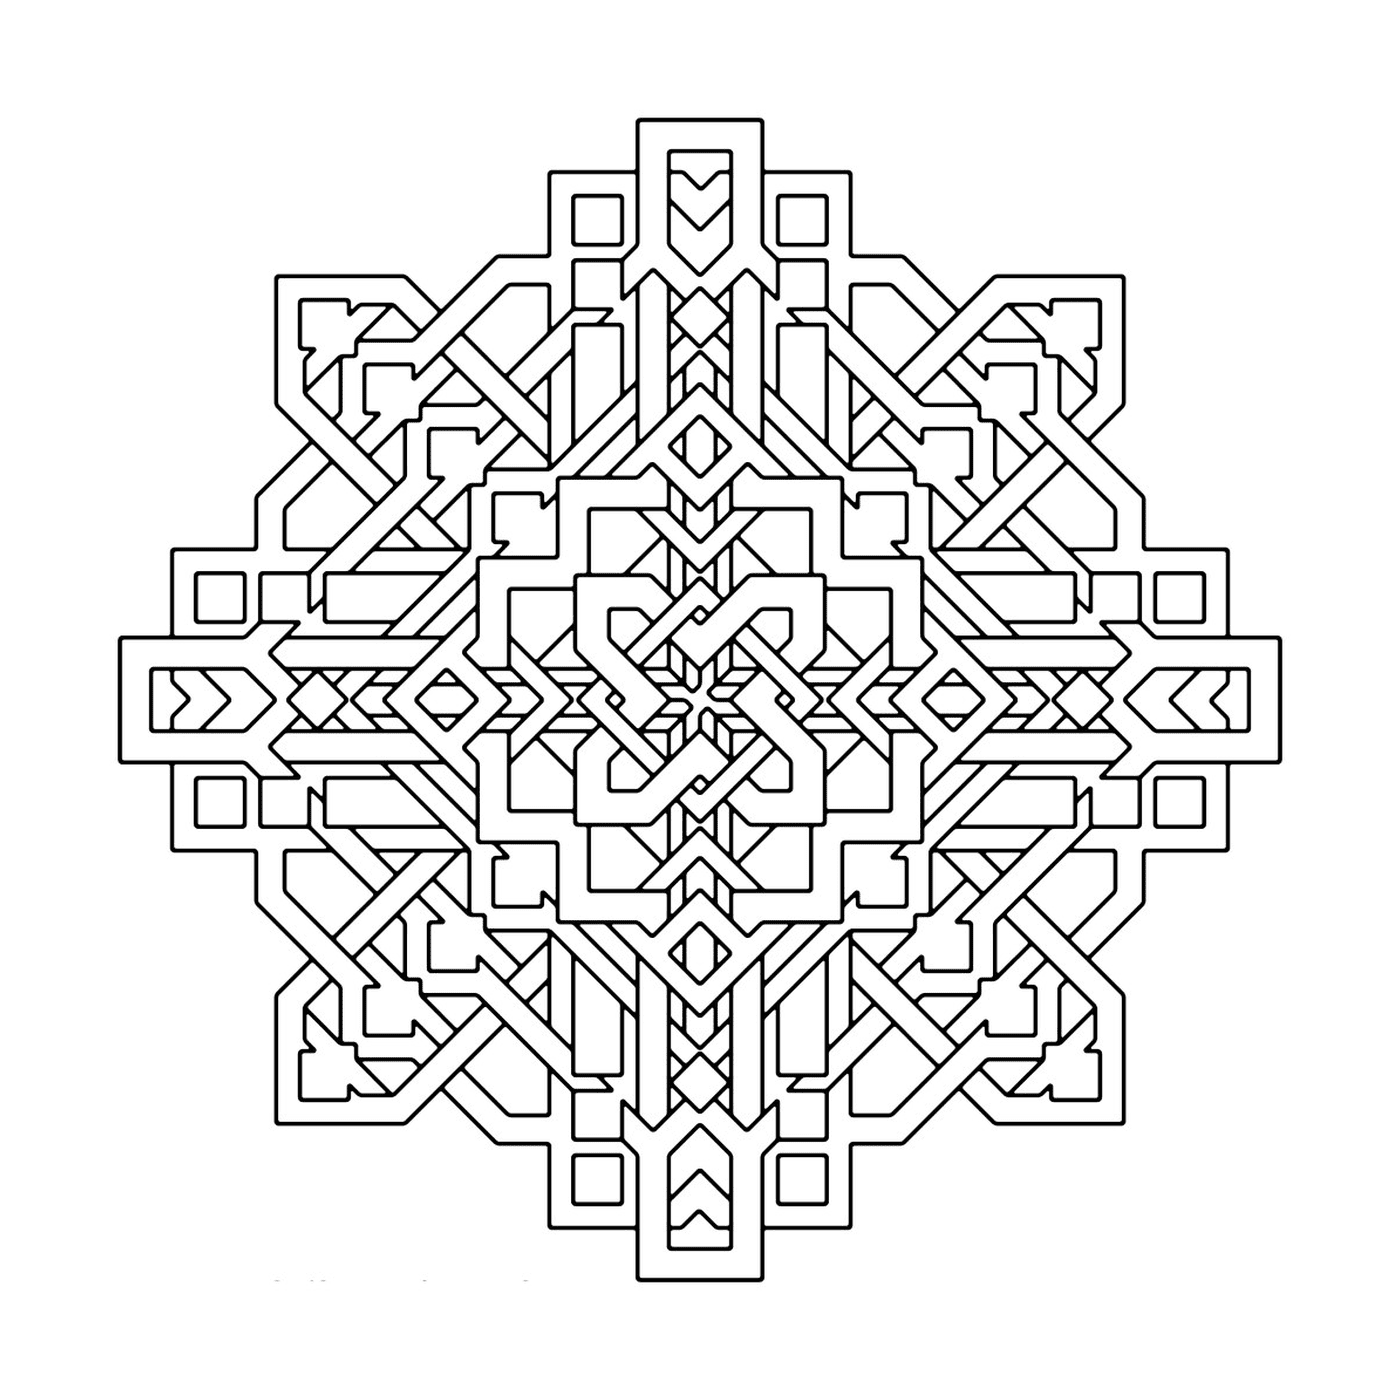   Un motif géométrique complexe et détaillé 